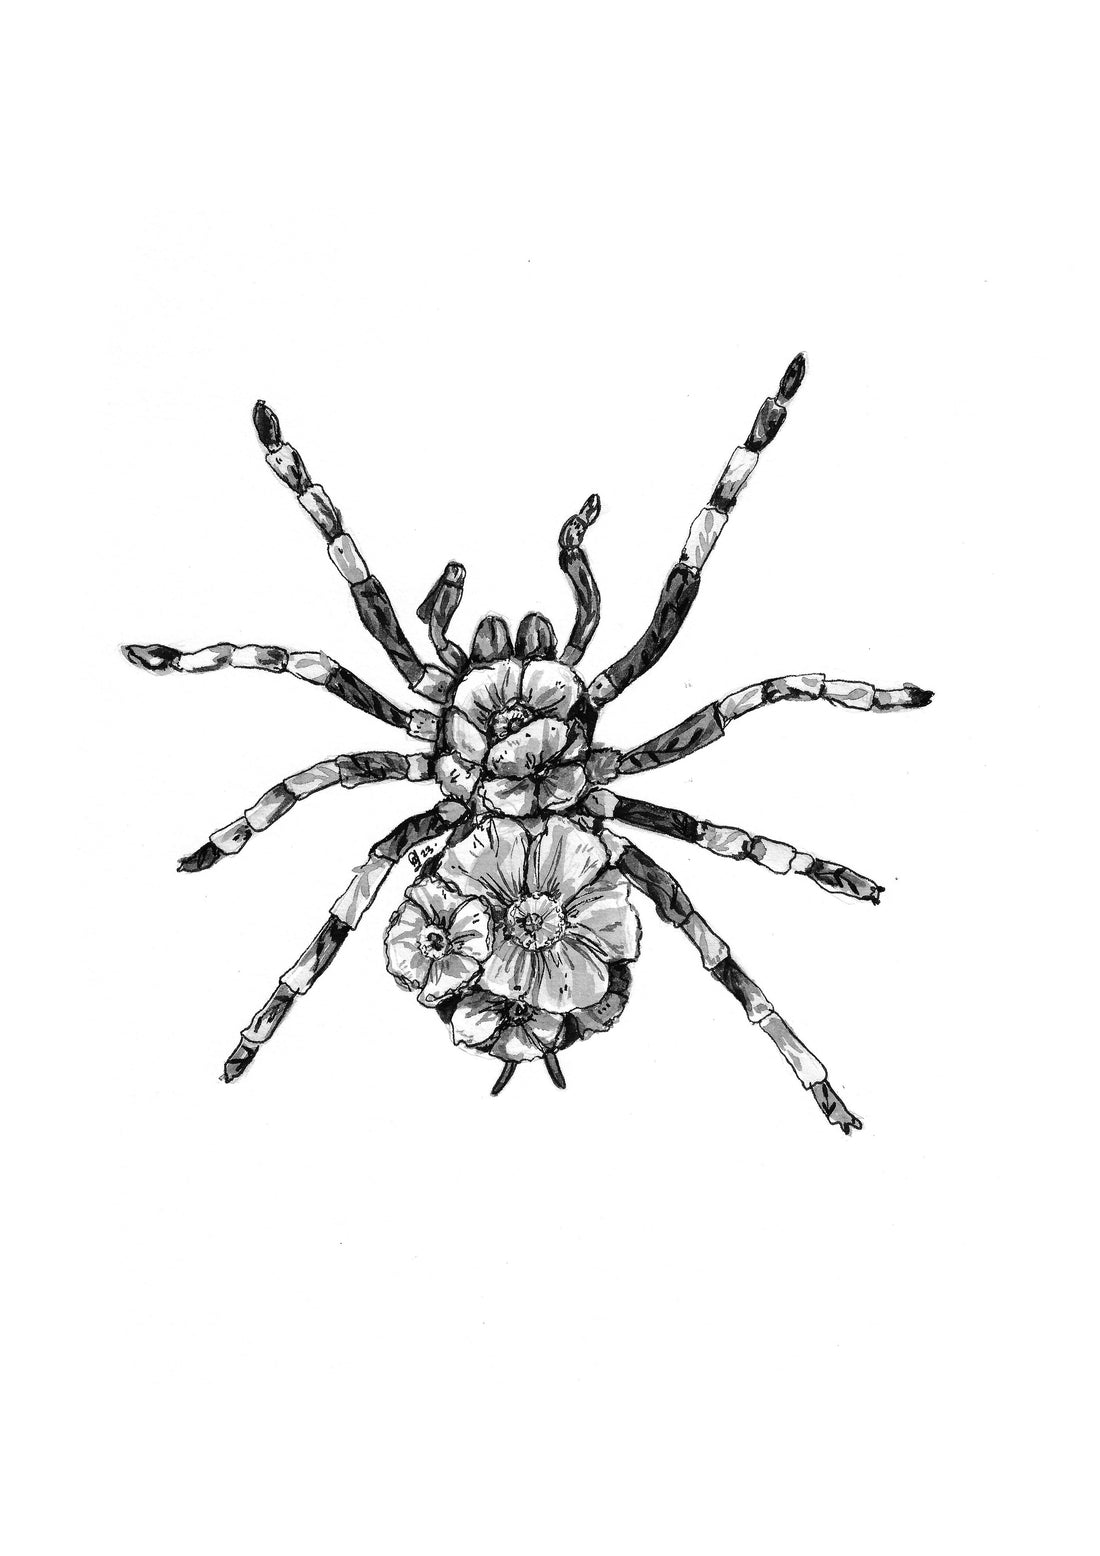 Spider 30cm x 40cm